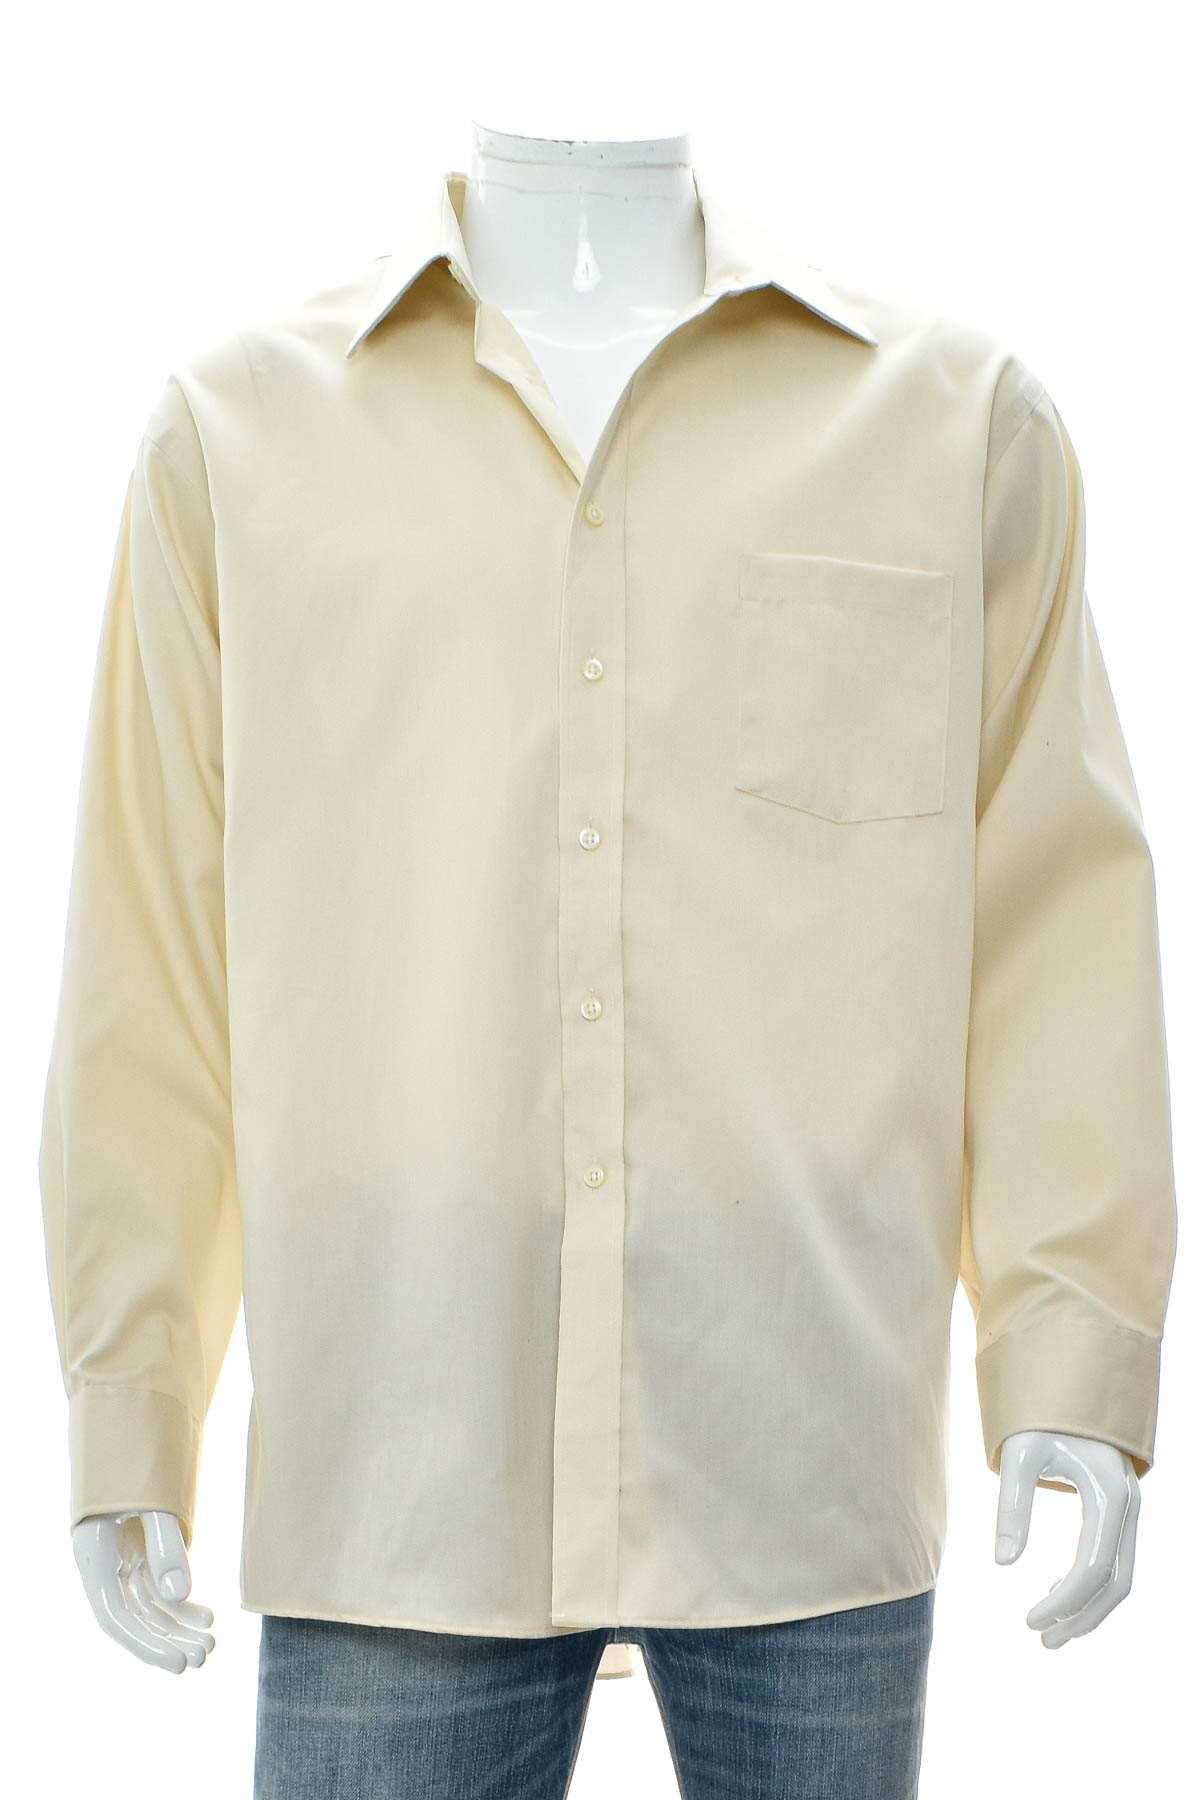 Ανδρικό πουκάμισο - JOSEPH ABBOUD - 0